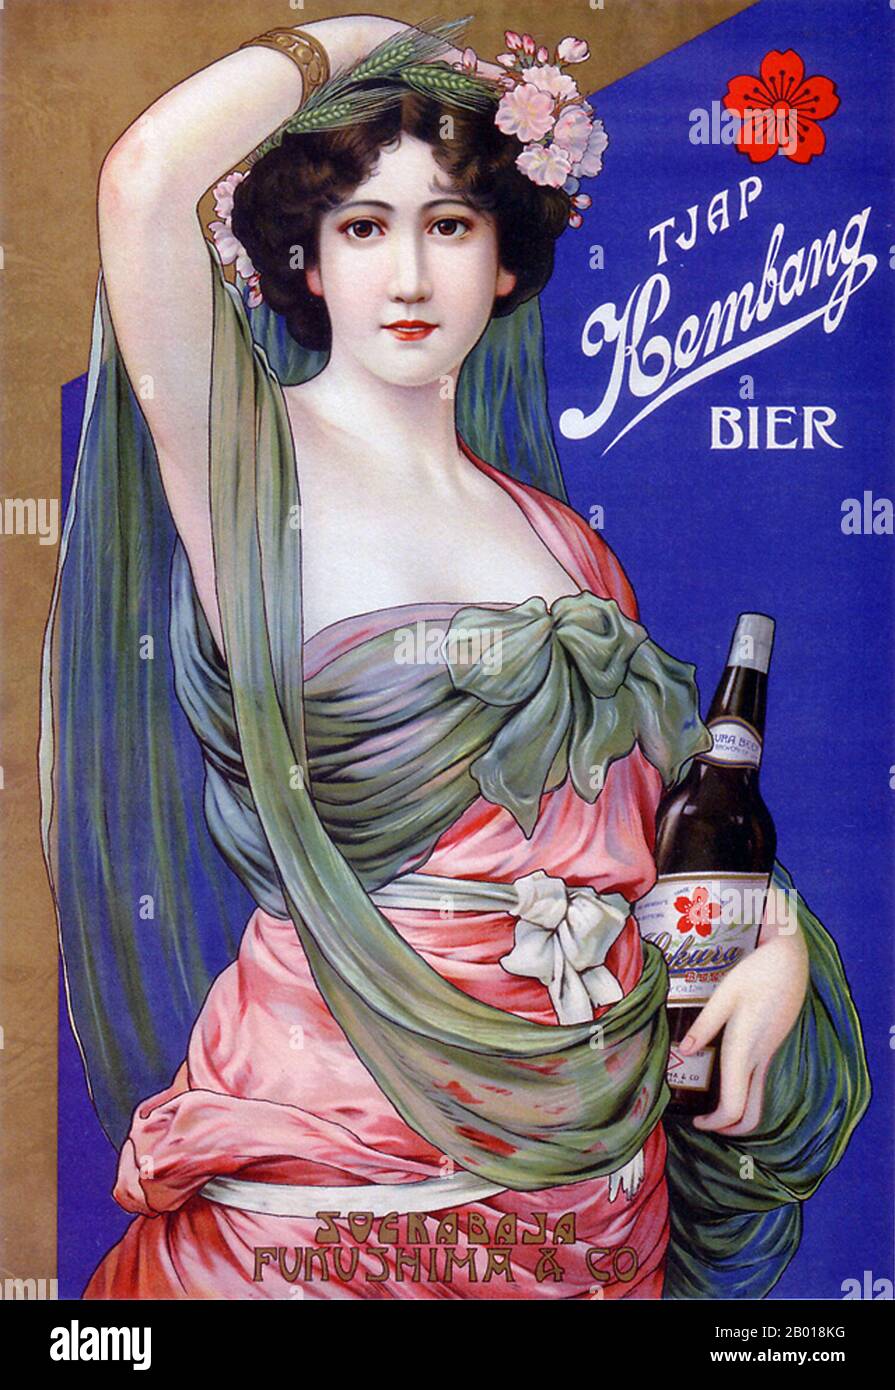 Giappone: Poster pubblicitario per Kembang (Sakura Export) birra, c.. 1912-1916. Una donna europea pubblicizza la birra Kembang (Sakura export) apparentemente rivolta a un mercato europeo (o espatriato) - forse una società mista olandese con sede nelle Indie orientali olandesi (Surabaya, Indonesia). Foto Stock